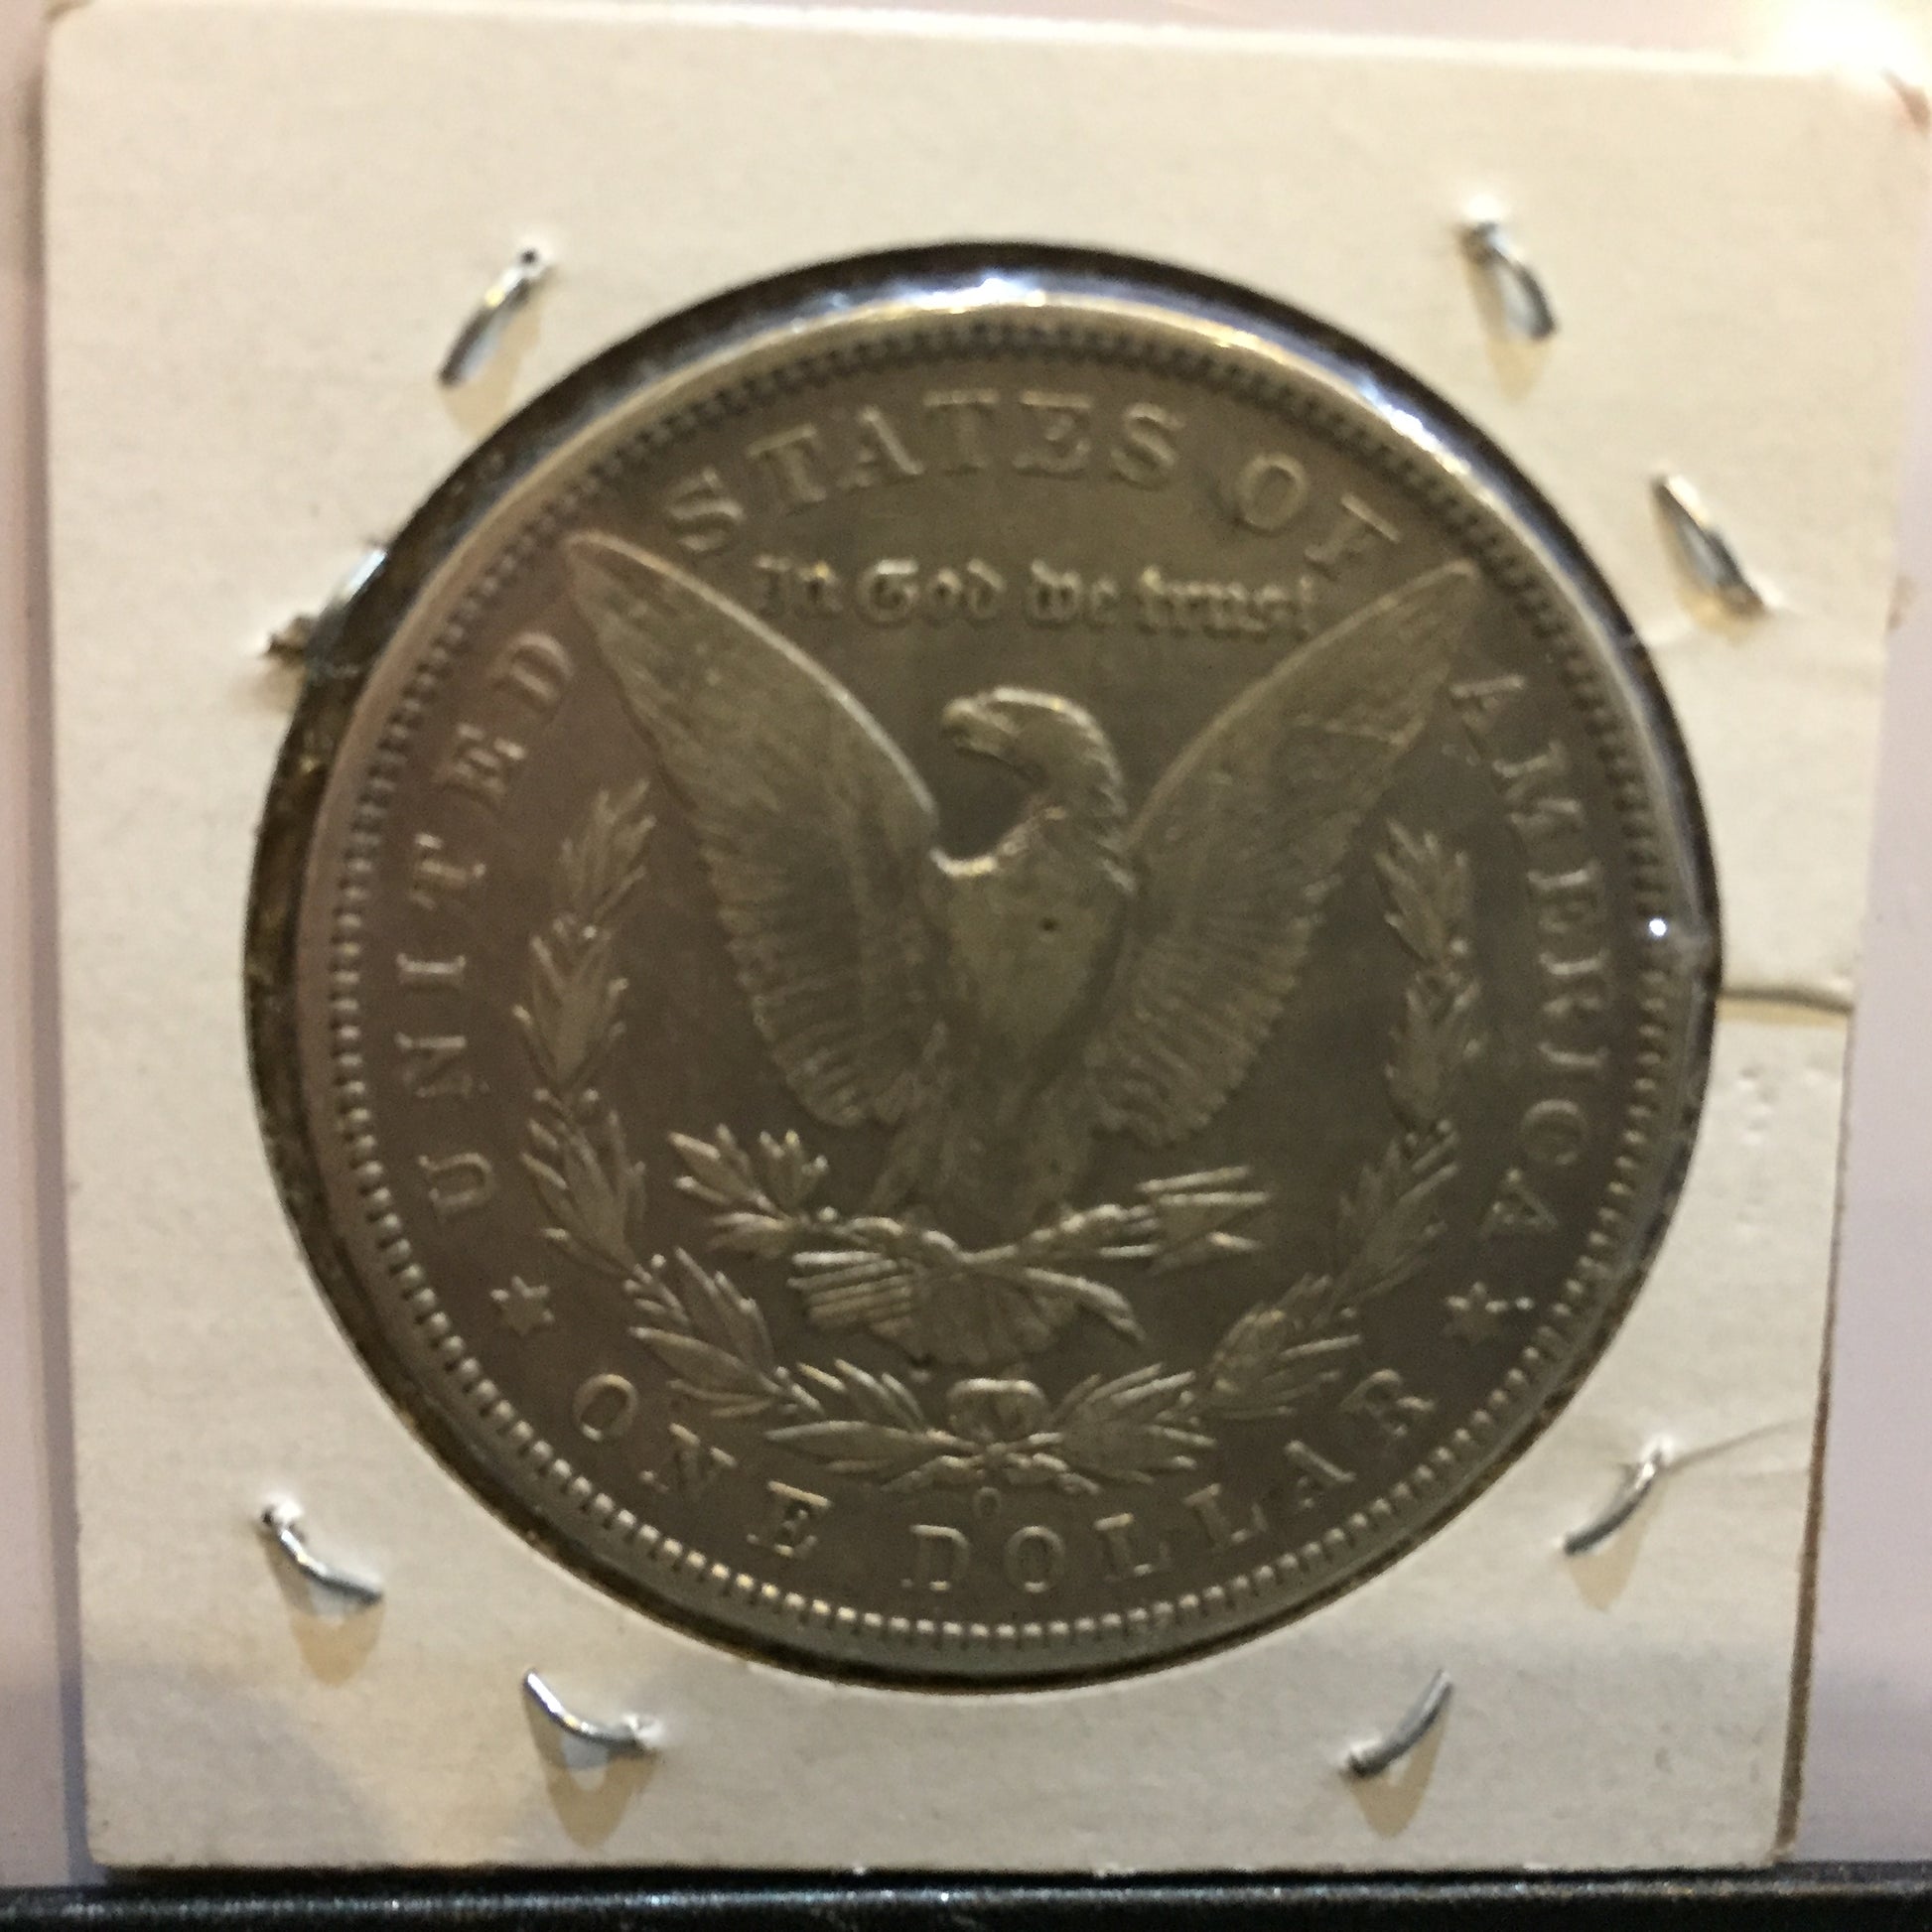 Morgan Dollar 1892 Extra Fine EF - reverse